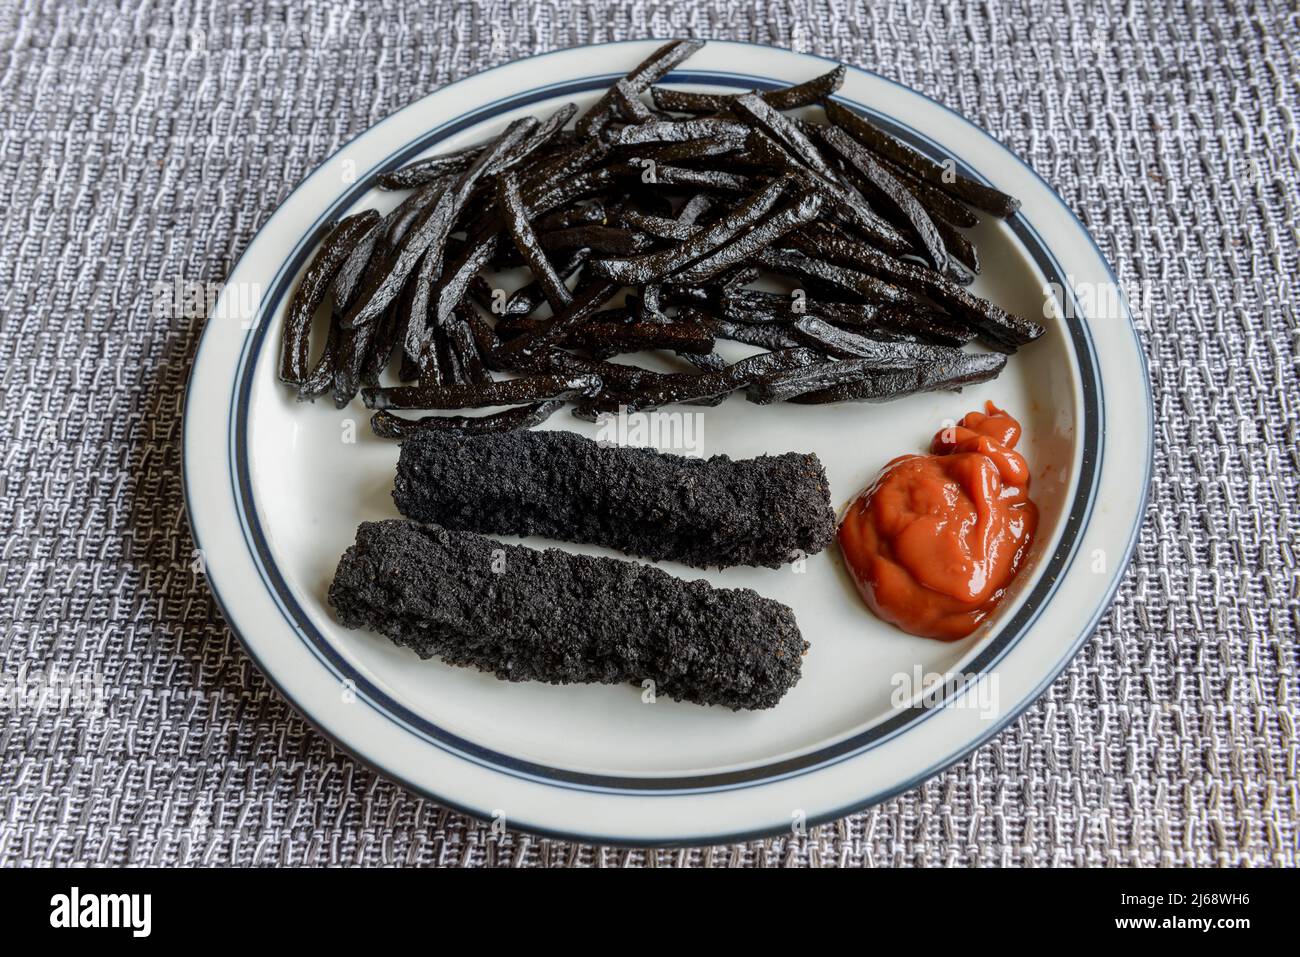 Un plato de mal quemado, negro, dedos de pescado y patatas fritas. Foto de stock